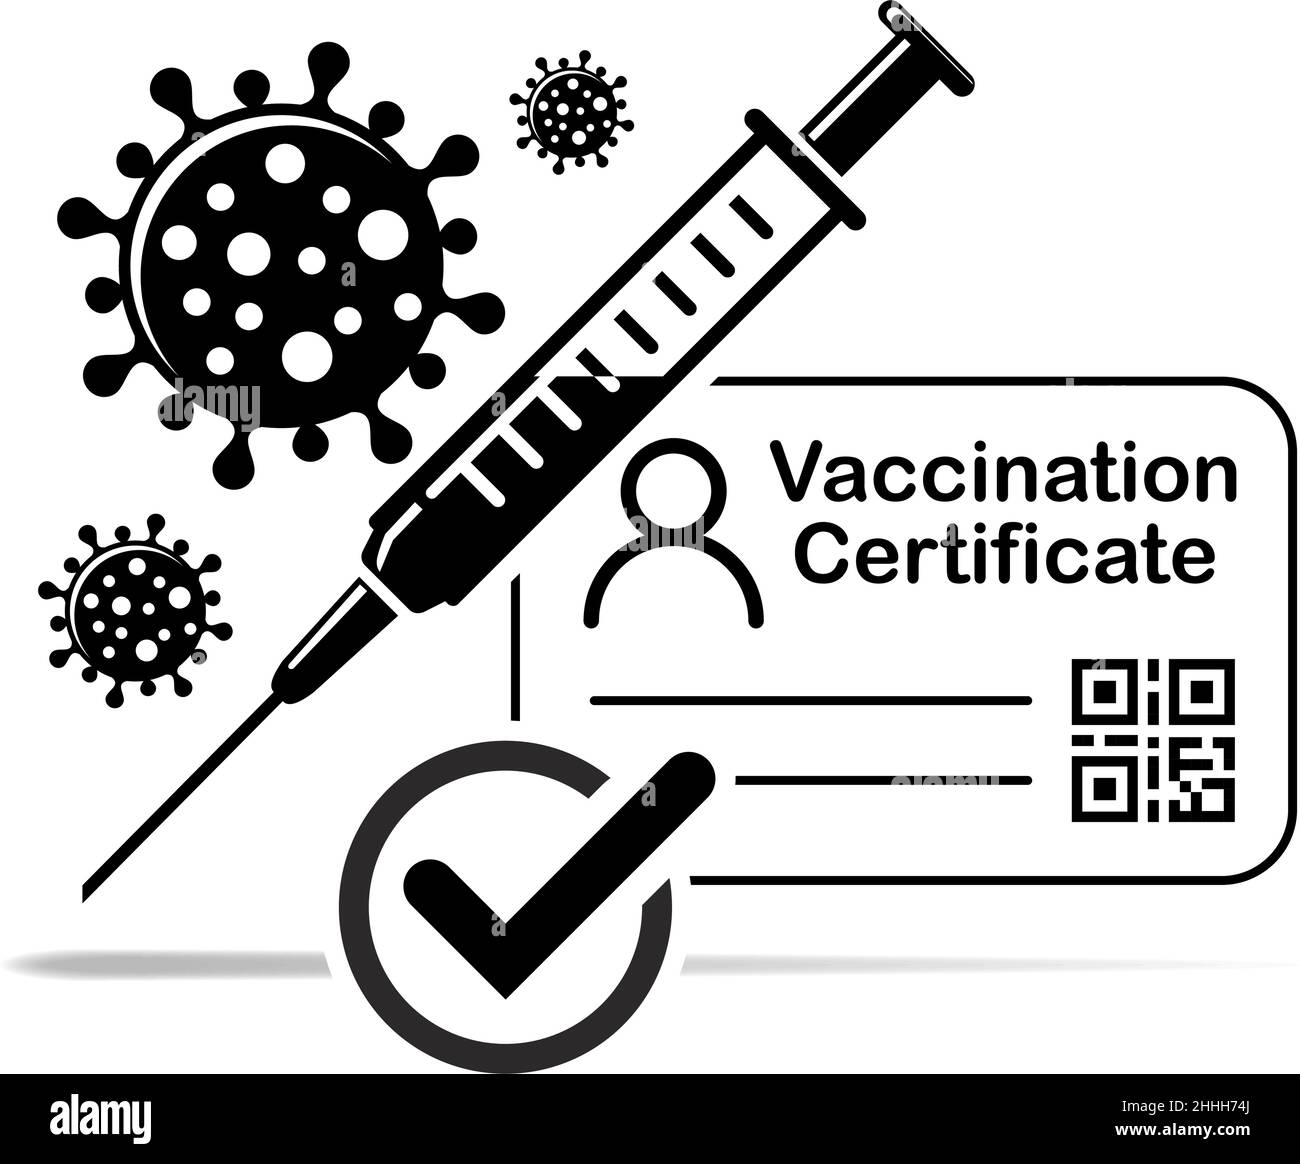 Symbol für den COVID-19-Impfpass. Impfpass gegen Coronavirus mit Häkchen, ärztlicher Karte oder Reisepass für die Zeitpandemie. Vec Stock Vektor